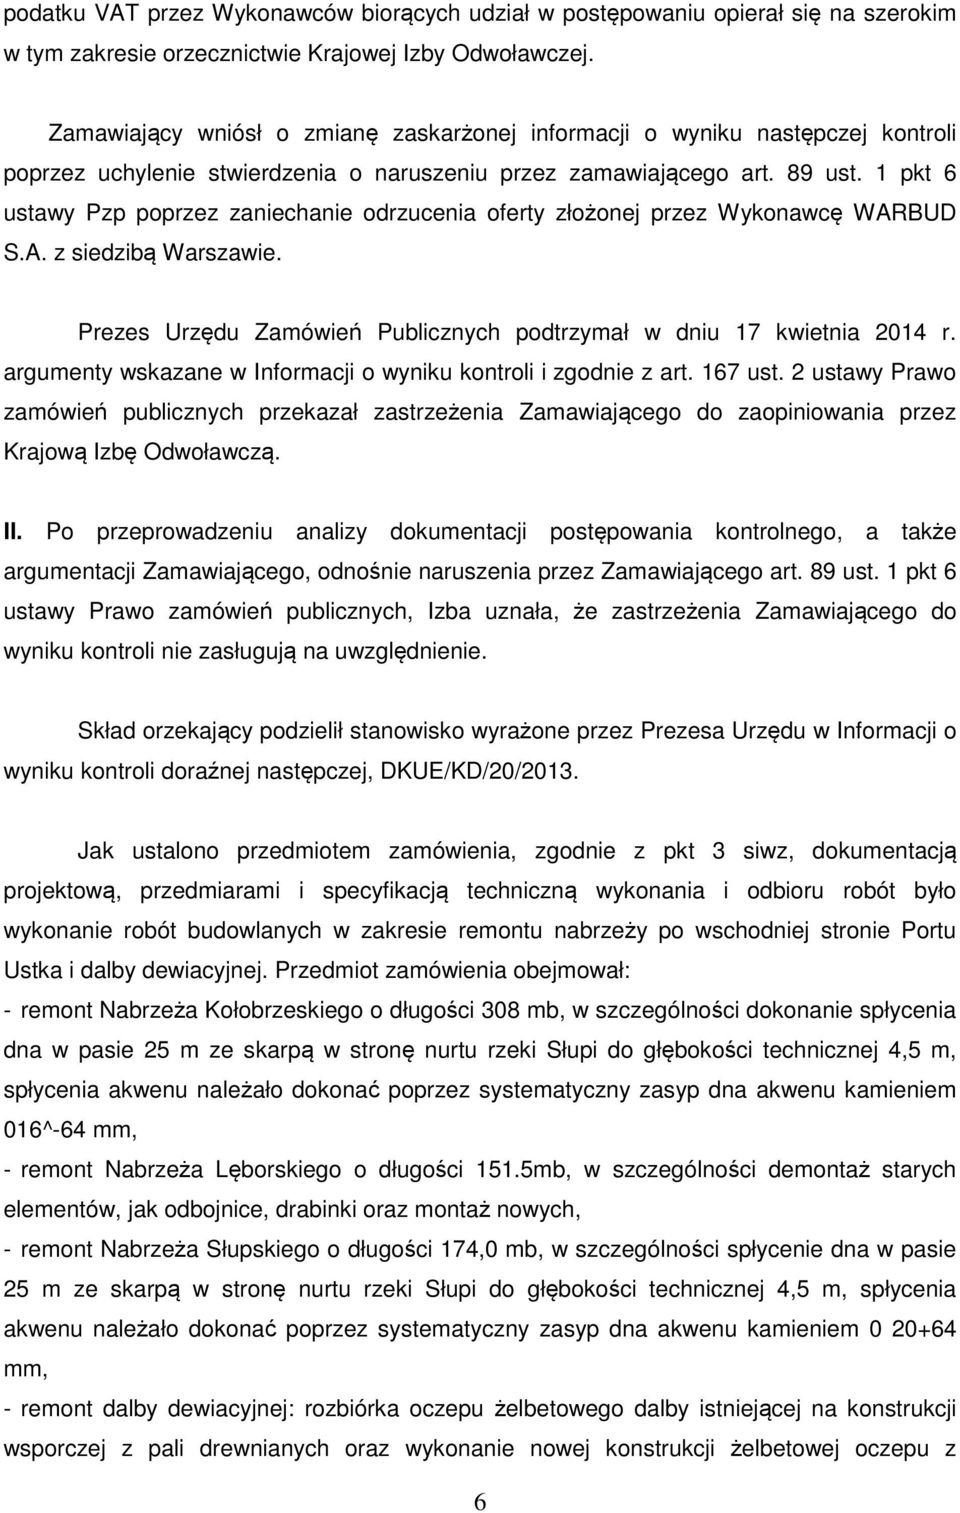 1 pkt 6 ustawy Pzp poprzez zaniechanie odrzucenia oferty złożonej przez Wykonawcę WARBUD S.A. z siedzibą Warszawie. Prezes Urzędu Zamówień Publicznych podtrzymał w dniu 17 kwietnia 2014 r.